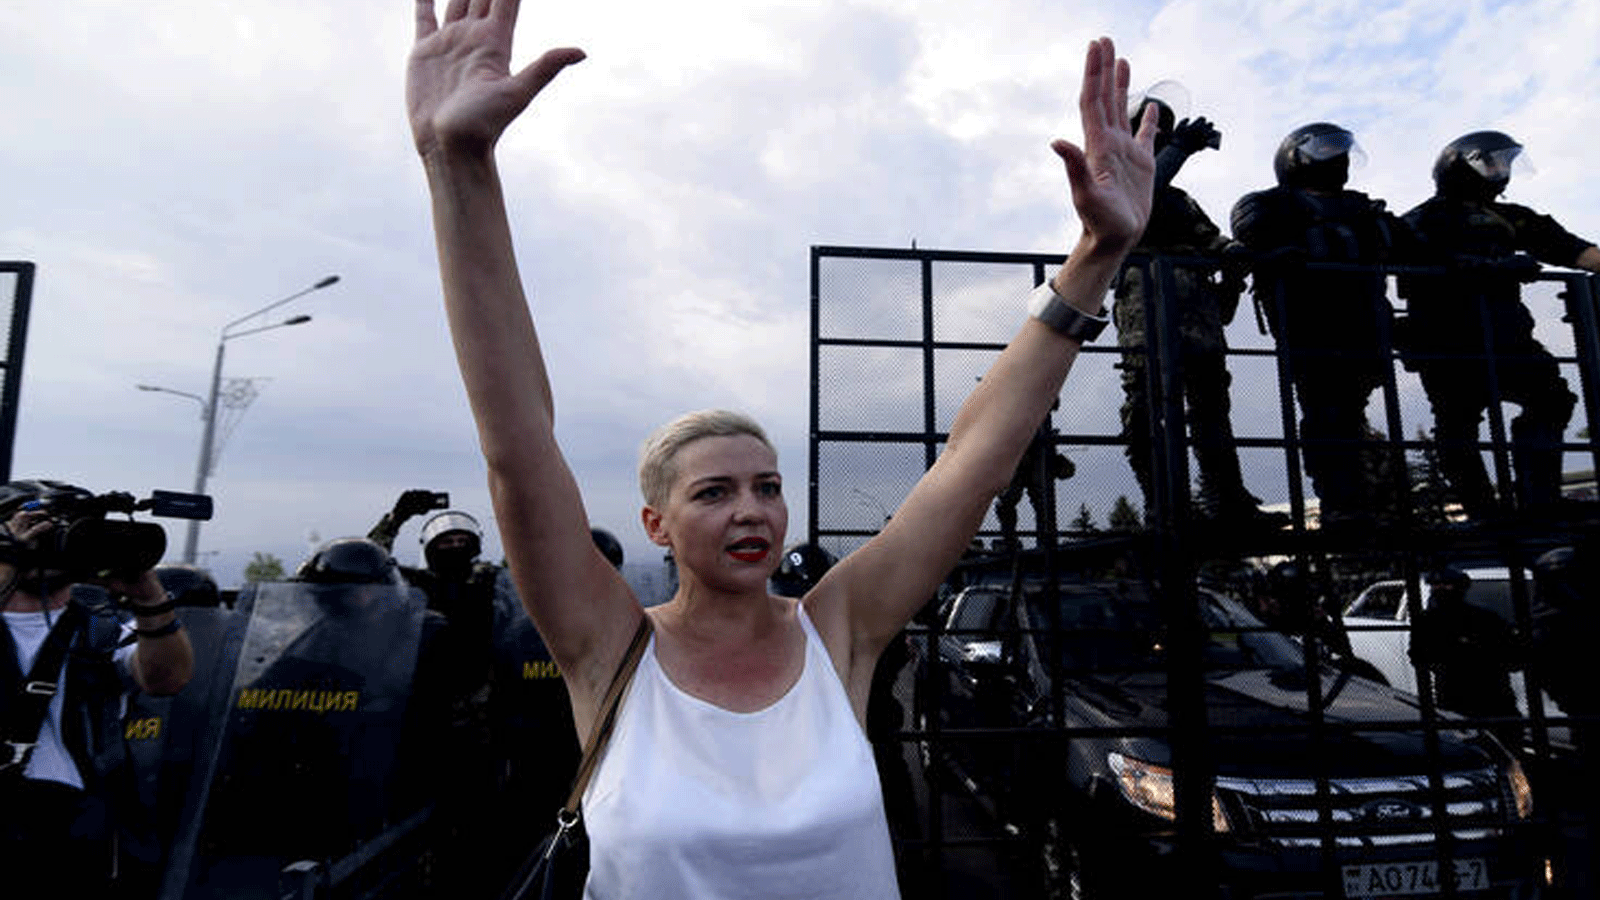 المعارضة ماريا كوليسنيكوفا، خلال مظاهرة للتنديد بالتزوير الانتخابي خلال اعادة انتخاب الرئيس الكسندر لوكاشينكو، في مينسك، 30 آب\ اغسطس 2020